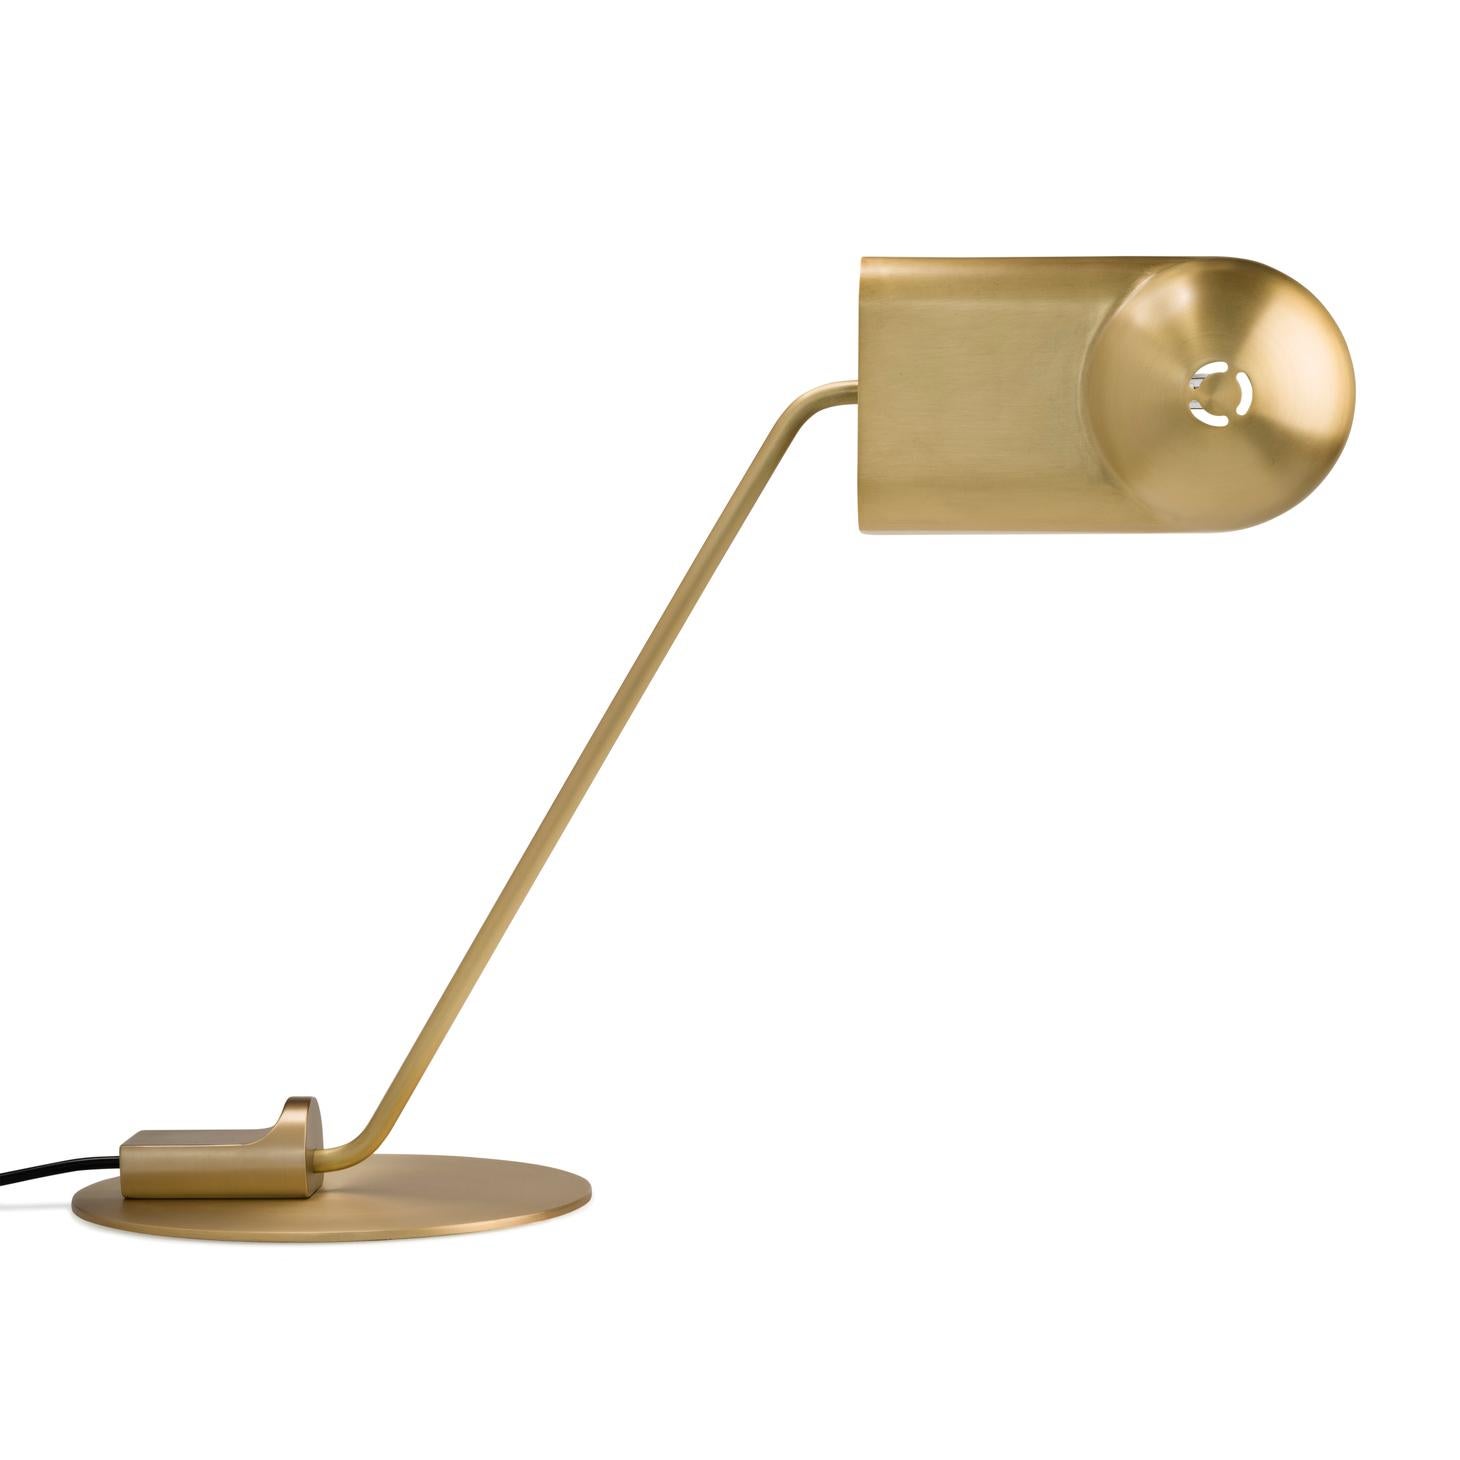 Lampe de table conçue par Joe Colombo en 1965.

La lampe Domo a été conçue à l'origine par le designer italien Joe Colombo en 1965. À l'époque, il a conçu trois lampes basées sur la même forme de noyau. Connu pour son design démocratique et